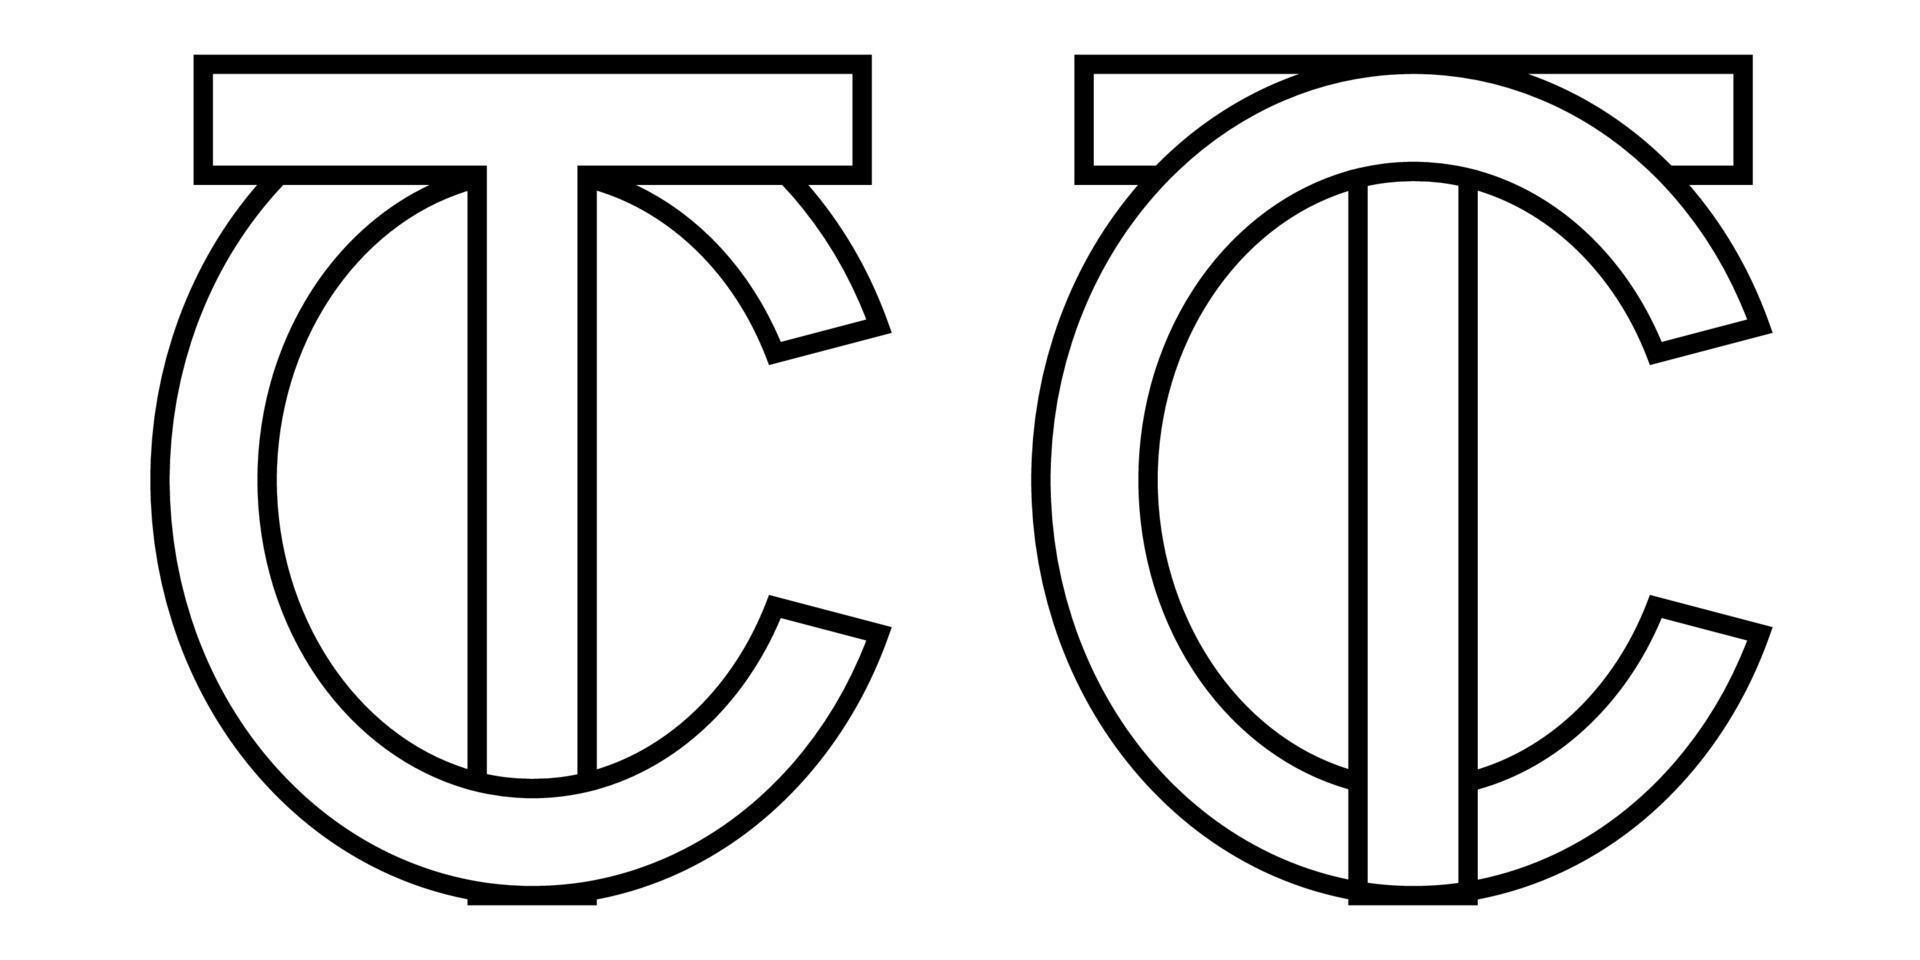 logo firmar tc Connecticut icono firmar dos entrelazado letras yo, C vector logo tc, Connecticut primero capital letras modelo alfabeto yo, C